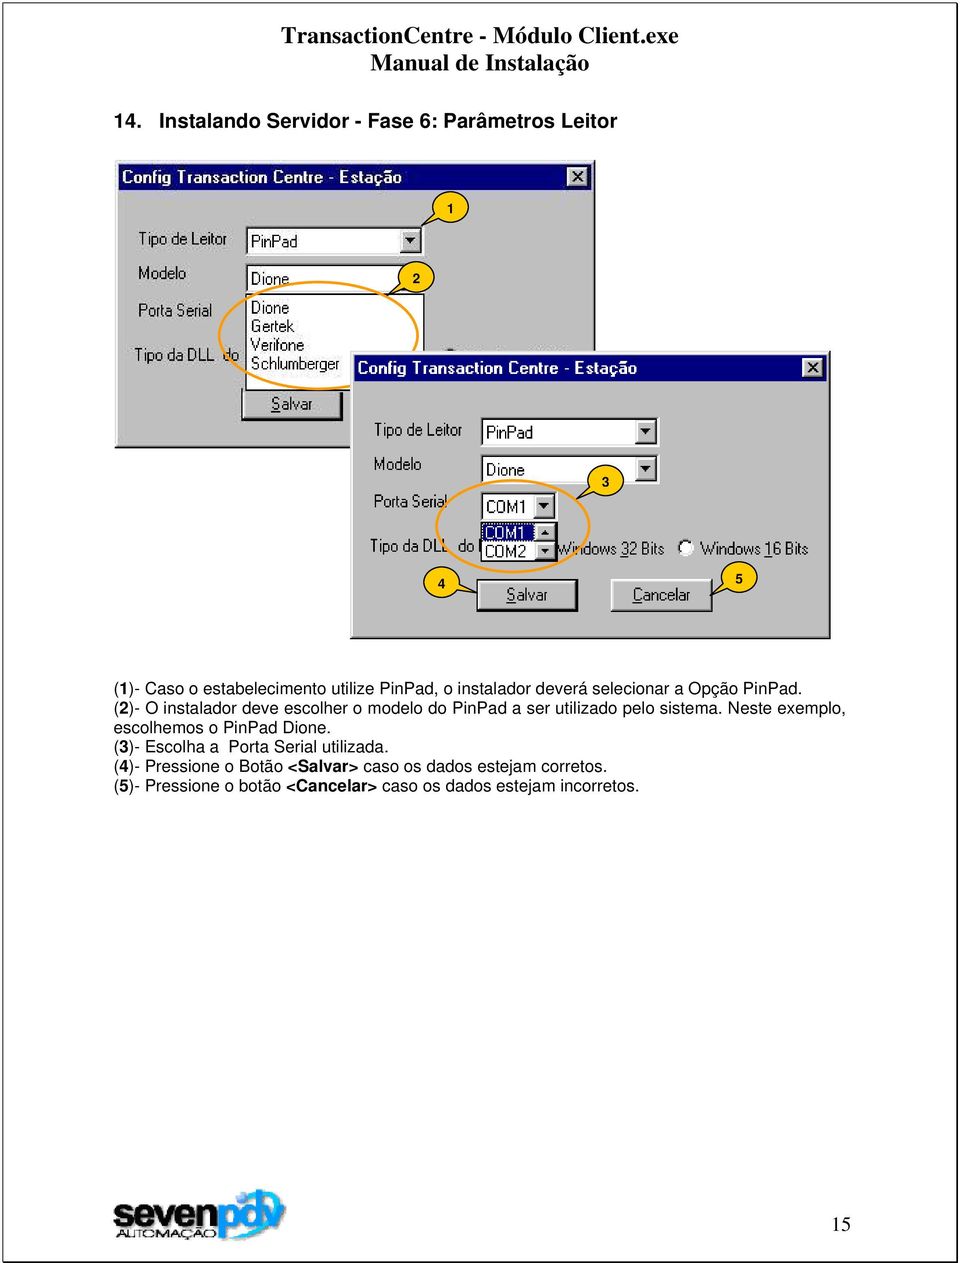 ()- O instalador deve escolher o modelo do PinPad a ser utilizado pelo sistema.